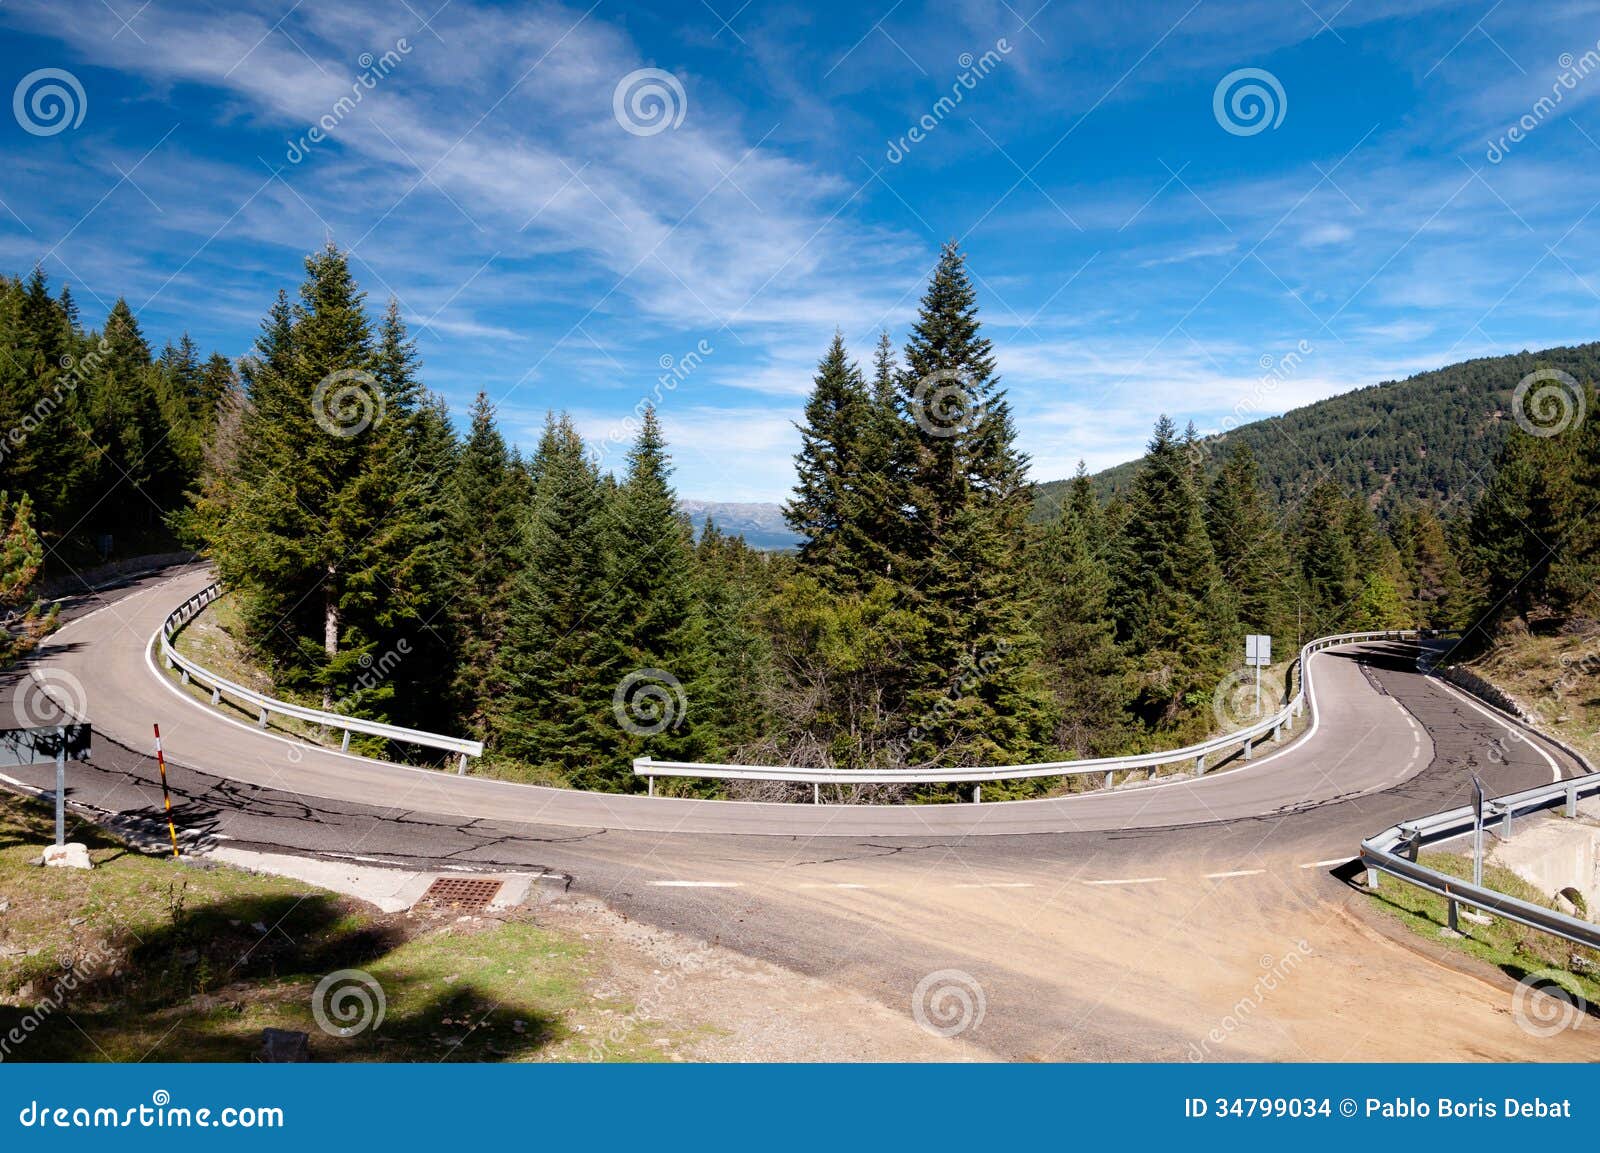 curve on road n-260 on spanish pirineos